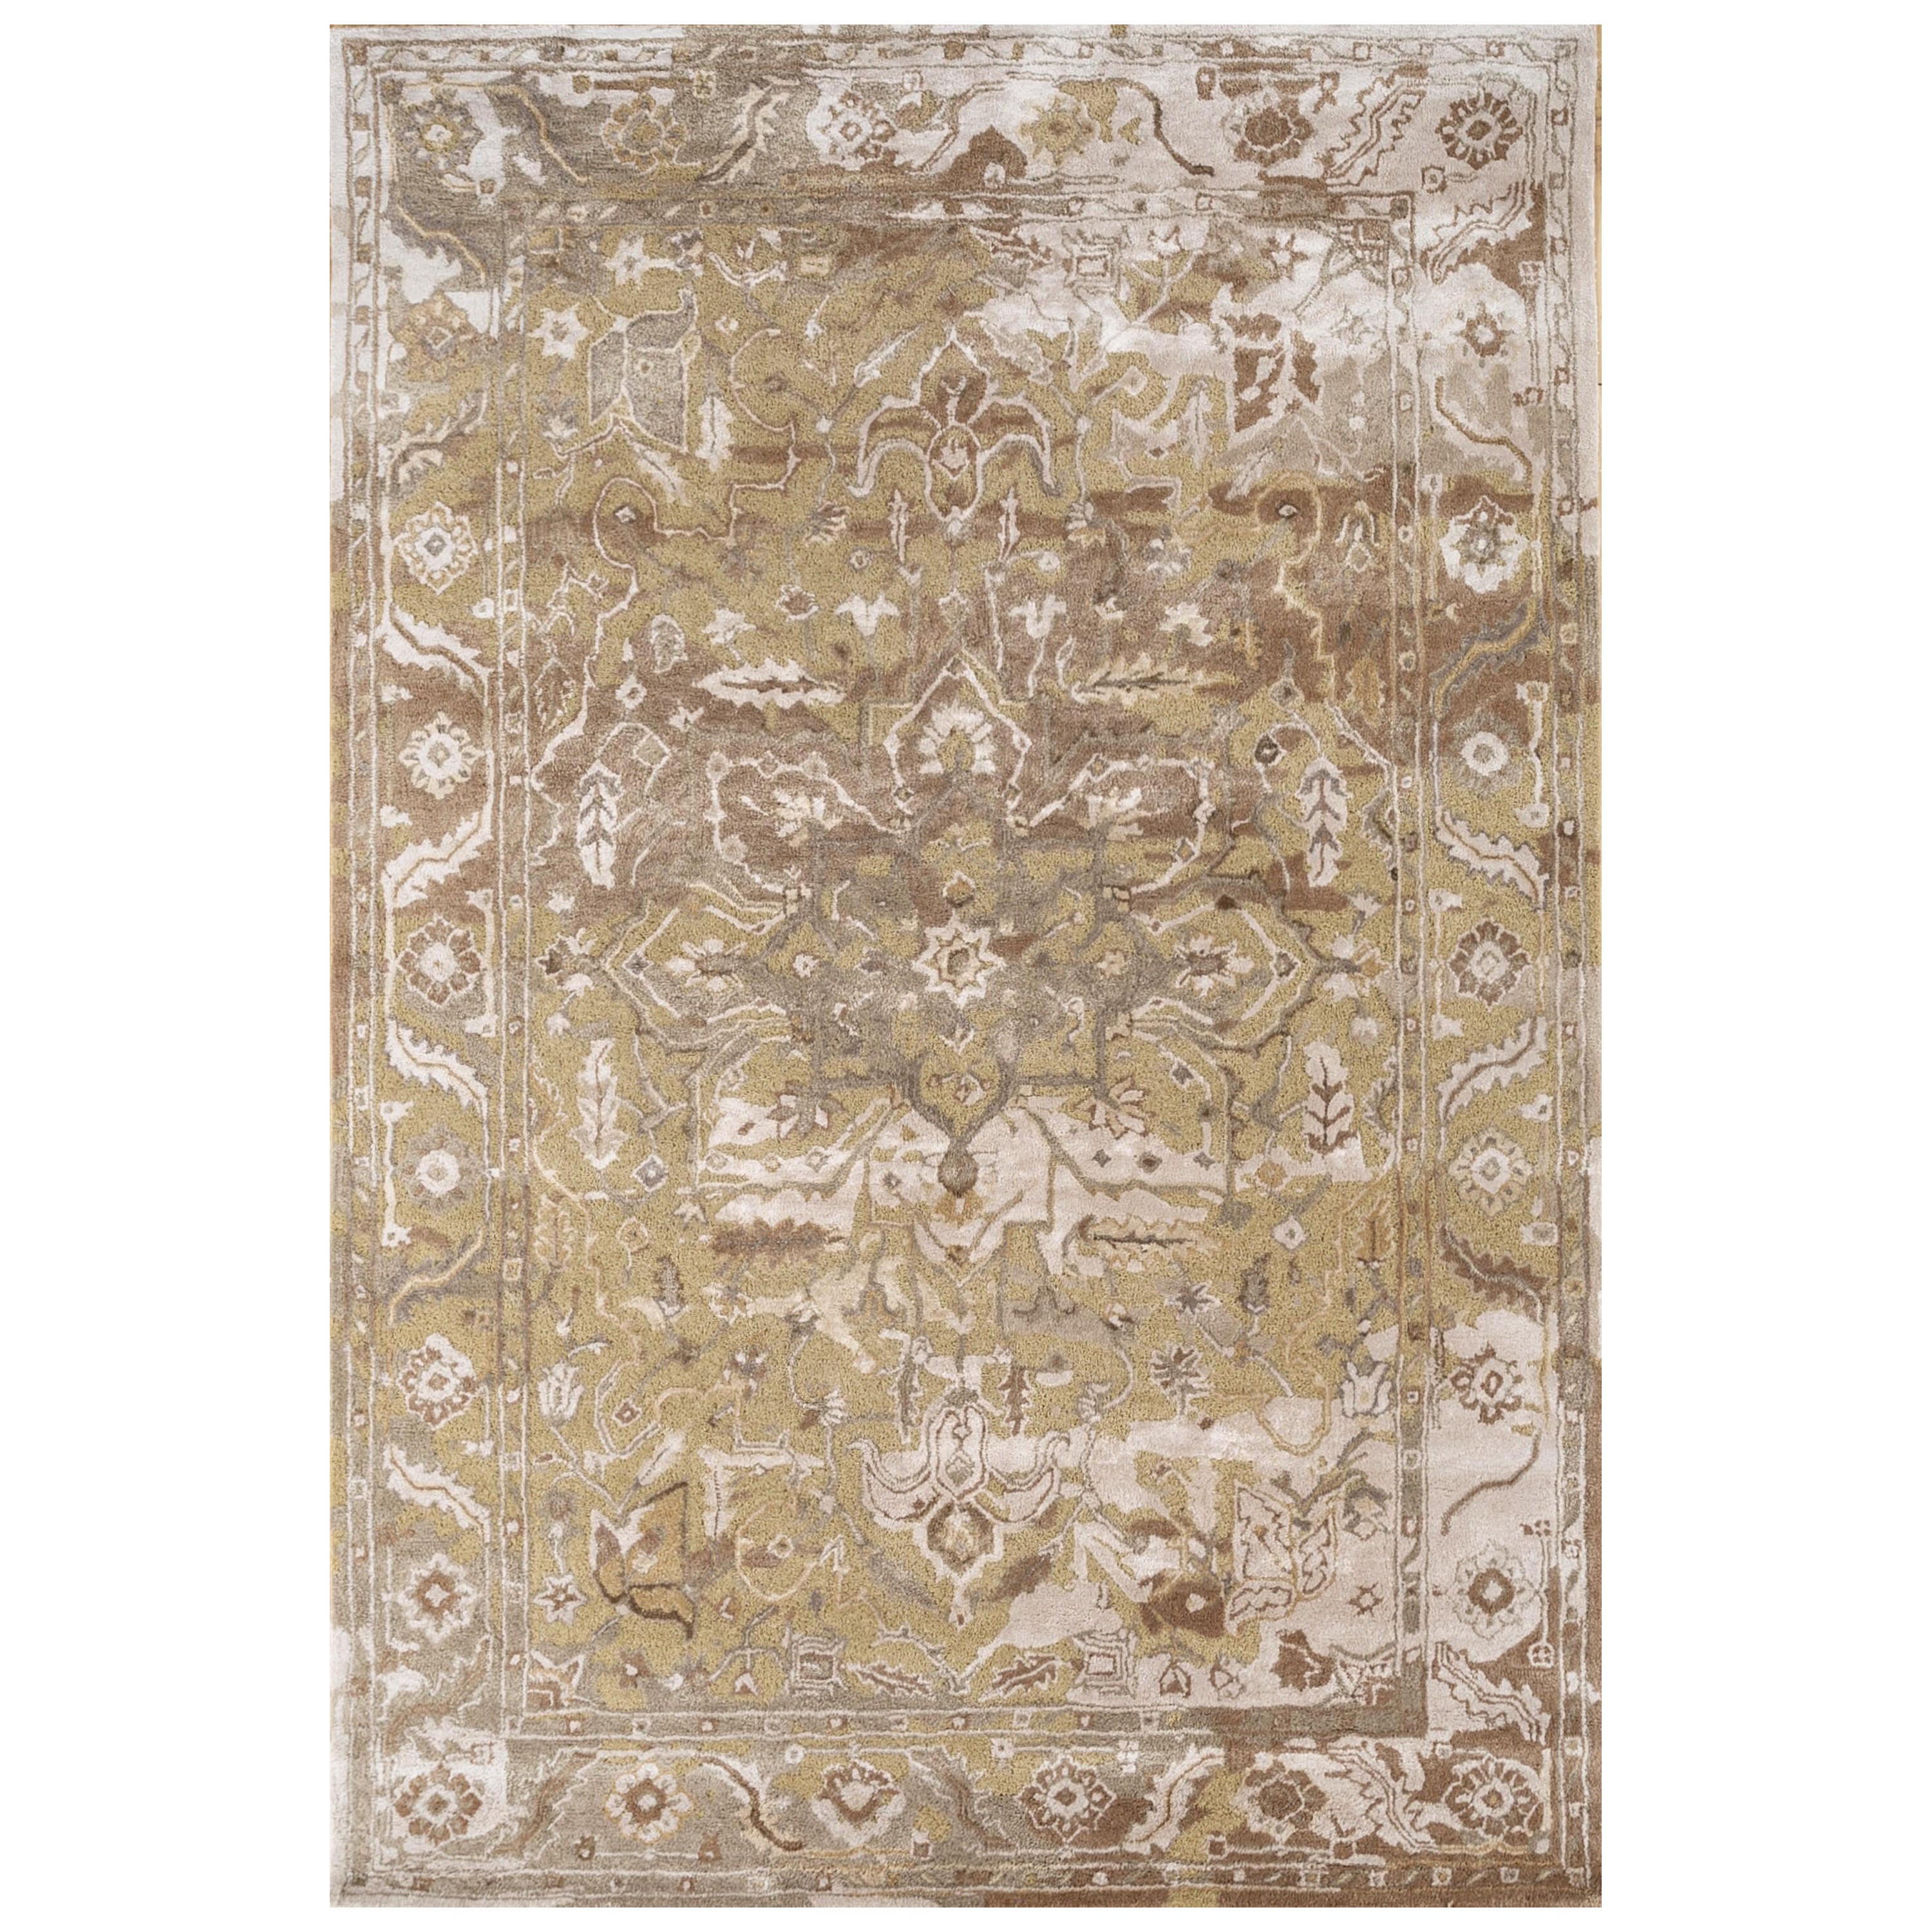 Gleam Grove Antiker weißer handgetufteter Teppich aus weißer Ton 180x270 cm